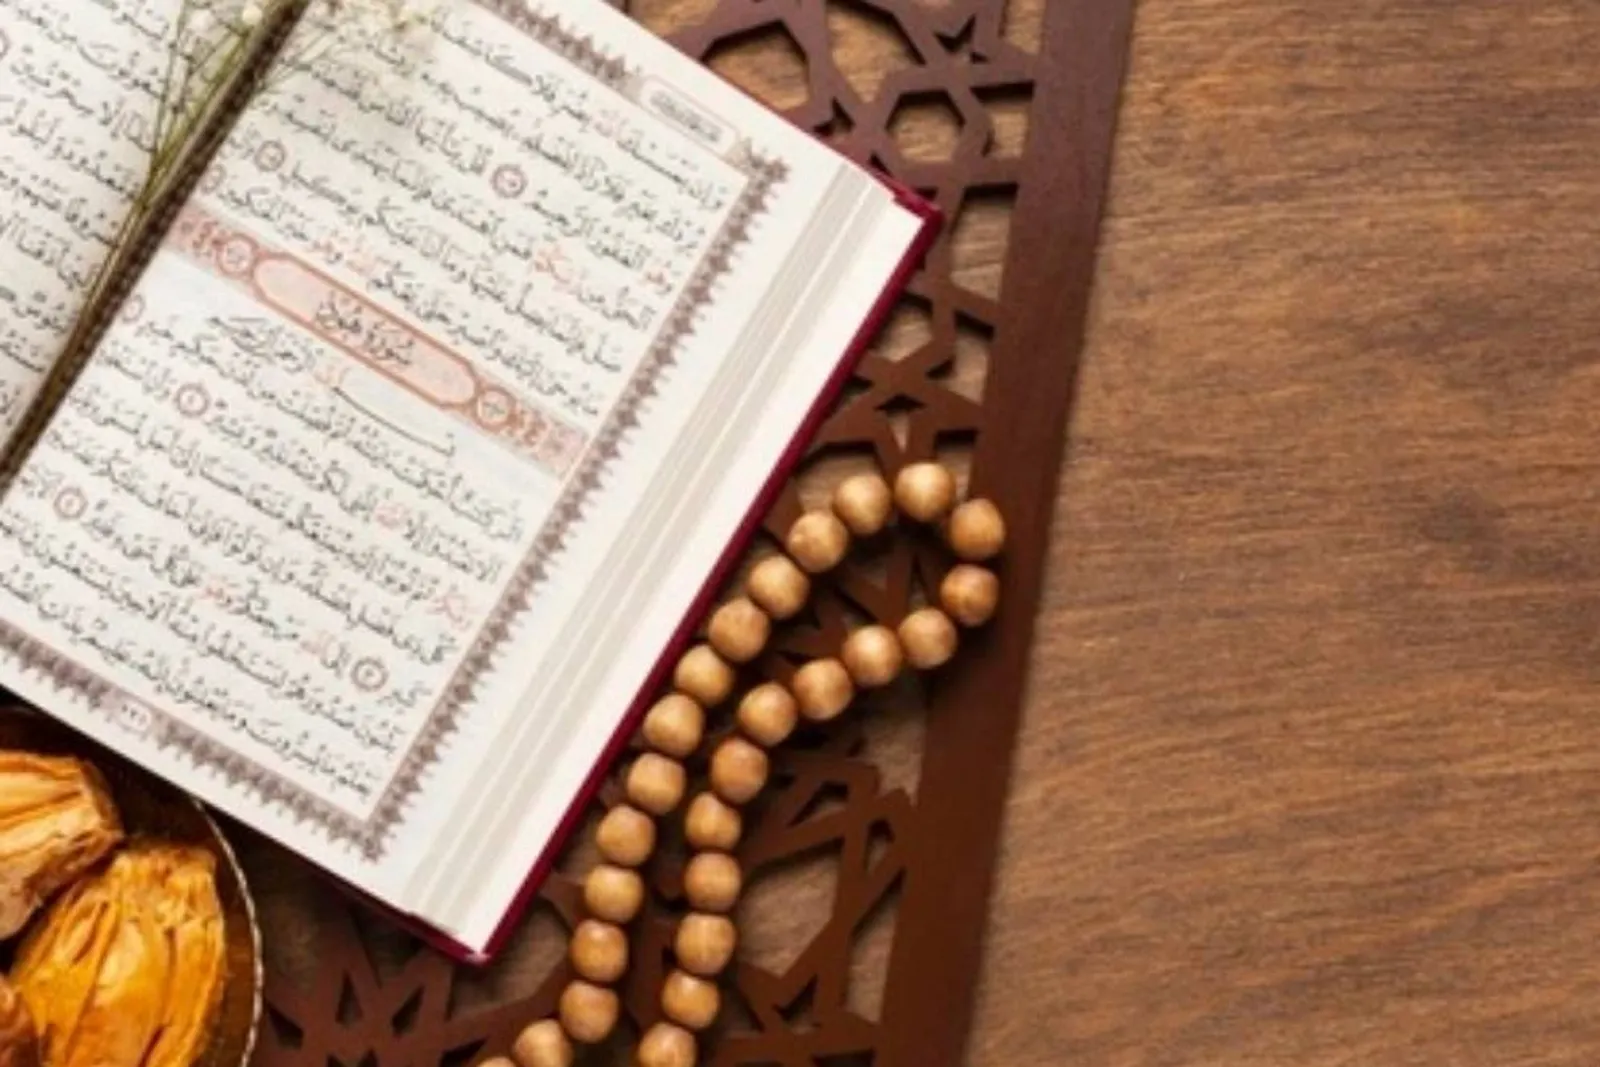 Bacaan Surat Al-Fatihah, Beserta Arti dan Keutamannya